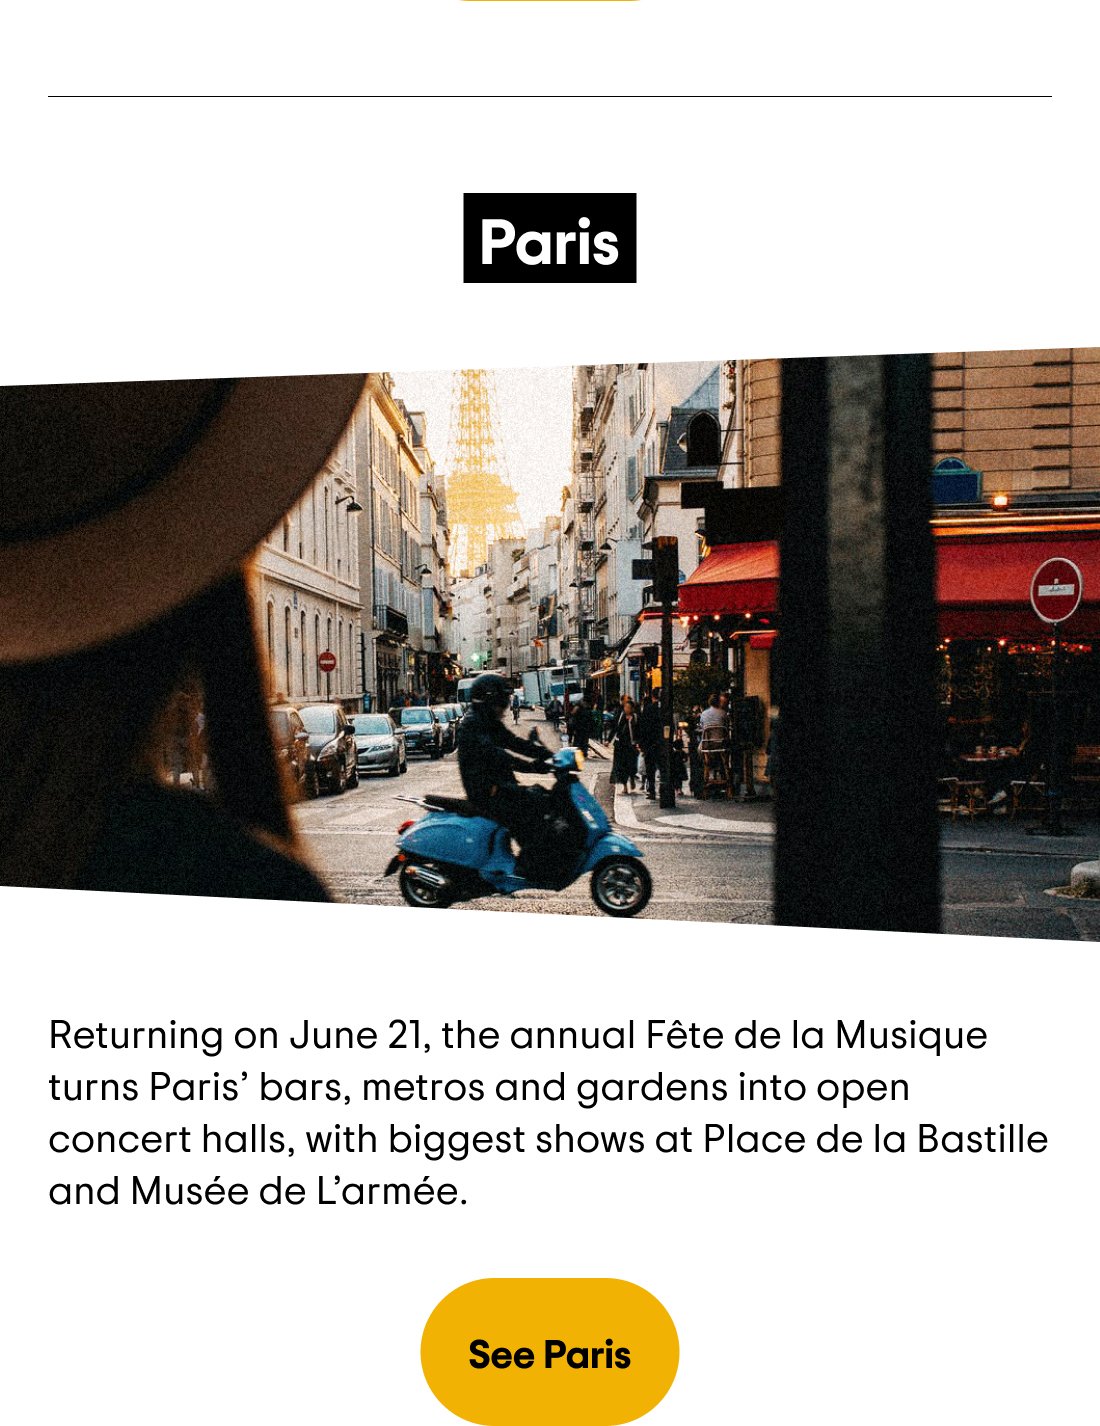 Paris — Returning on June 21, the annual Fête de la Musique turns Paris' bars, metros and gardens into open concert halls, with biggest shows at Place de la Bastille and Musée de L'Armée. See Paris